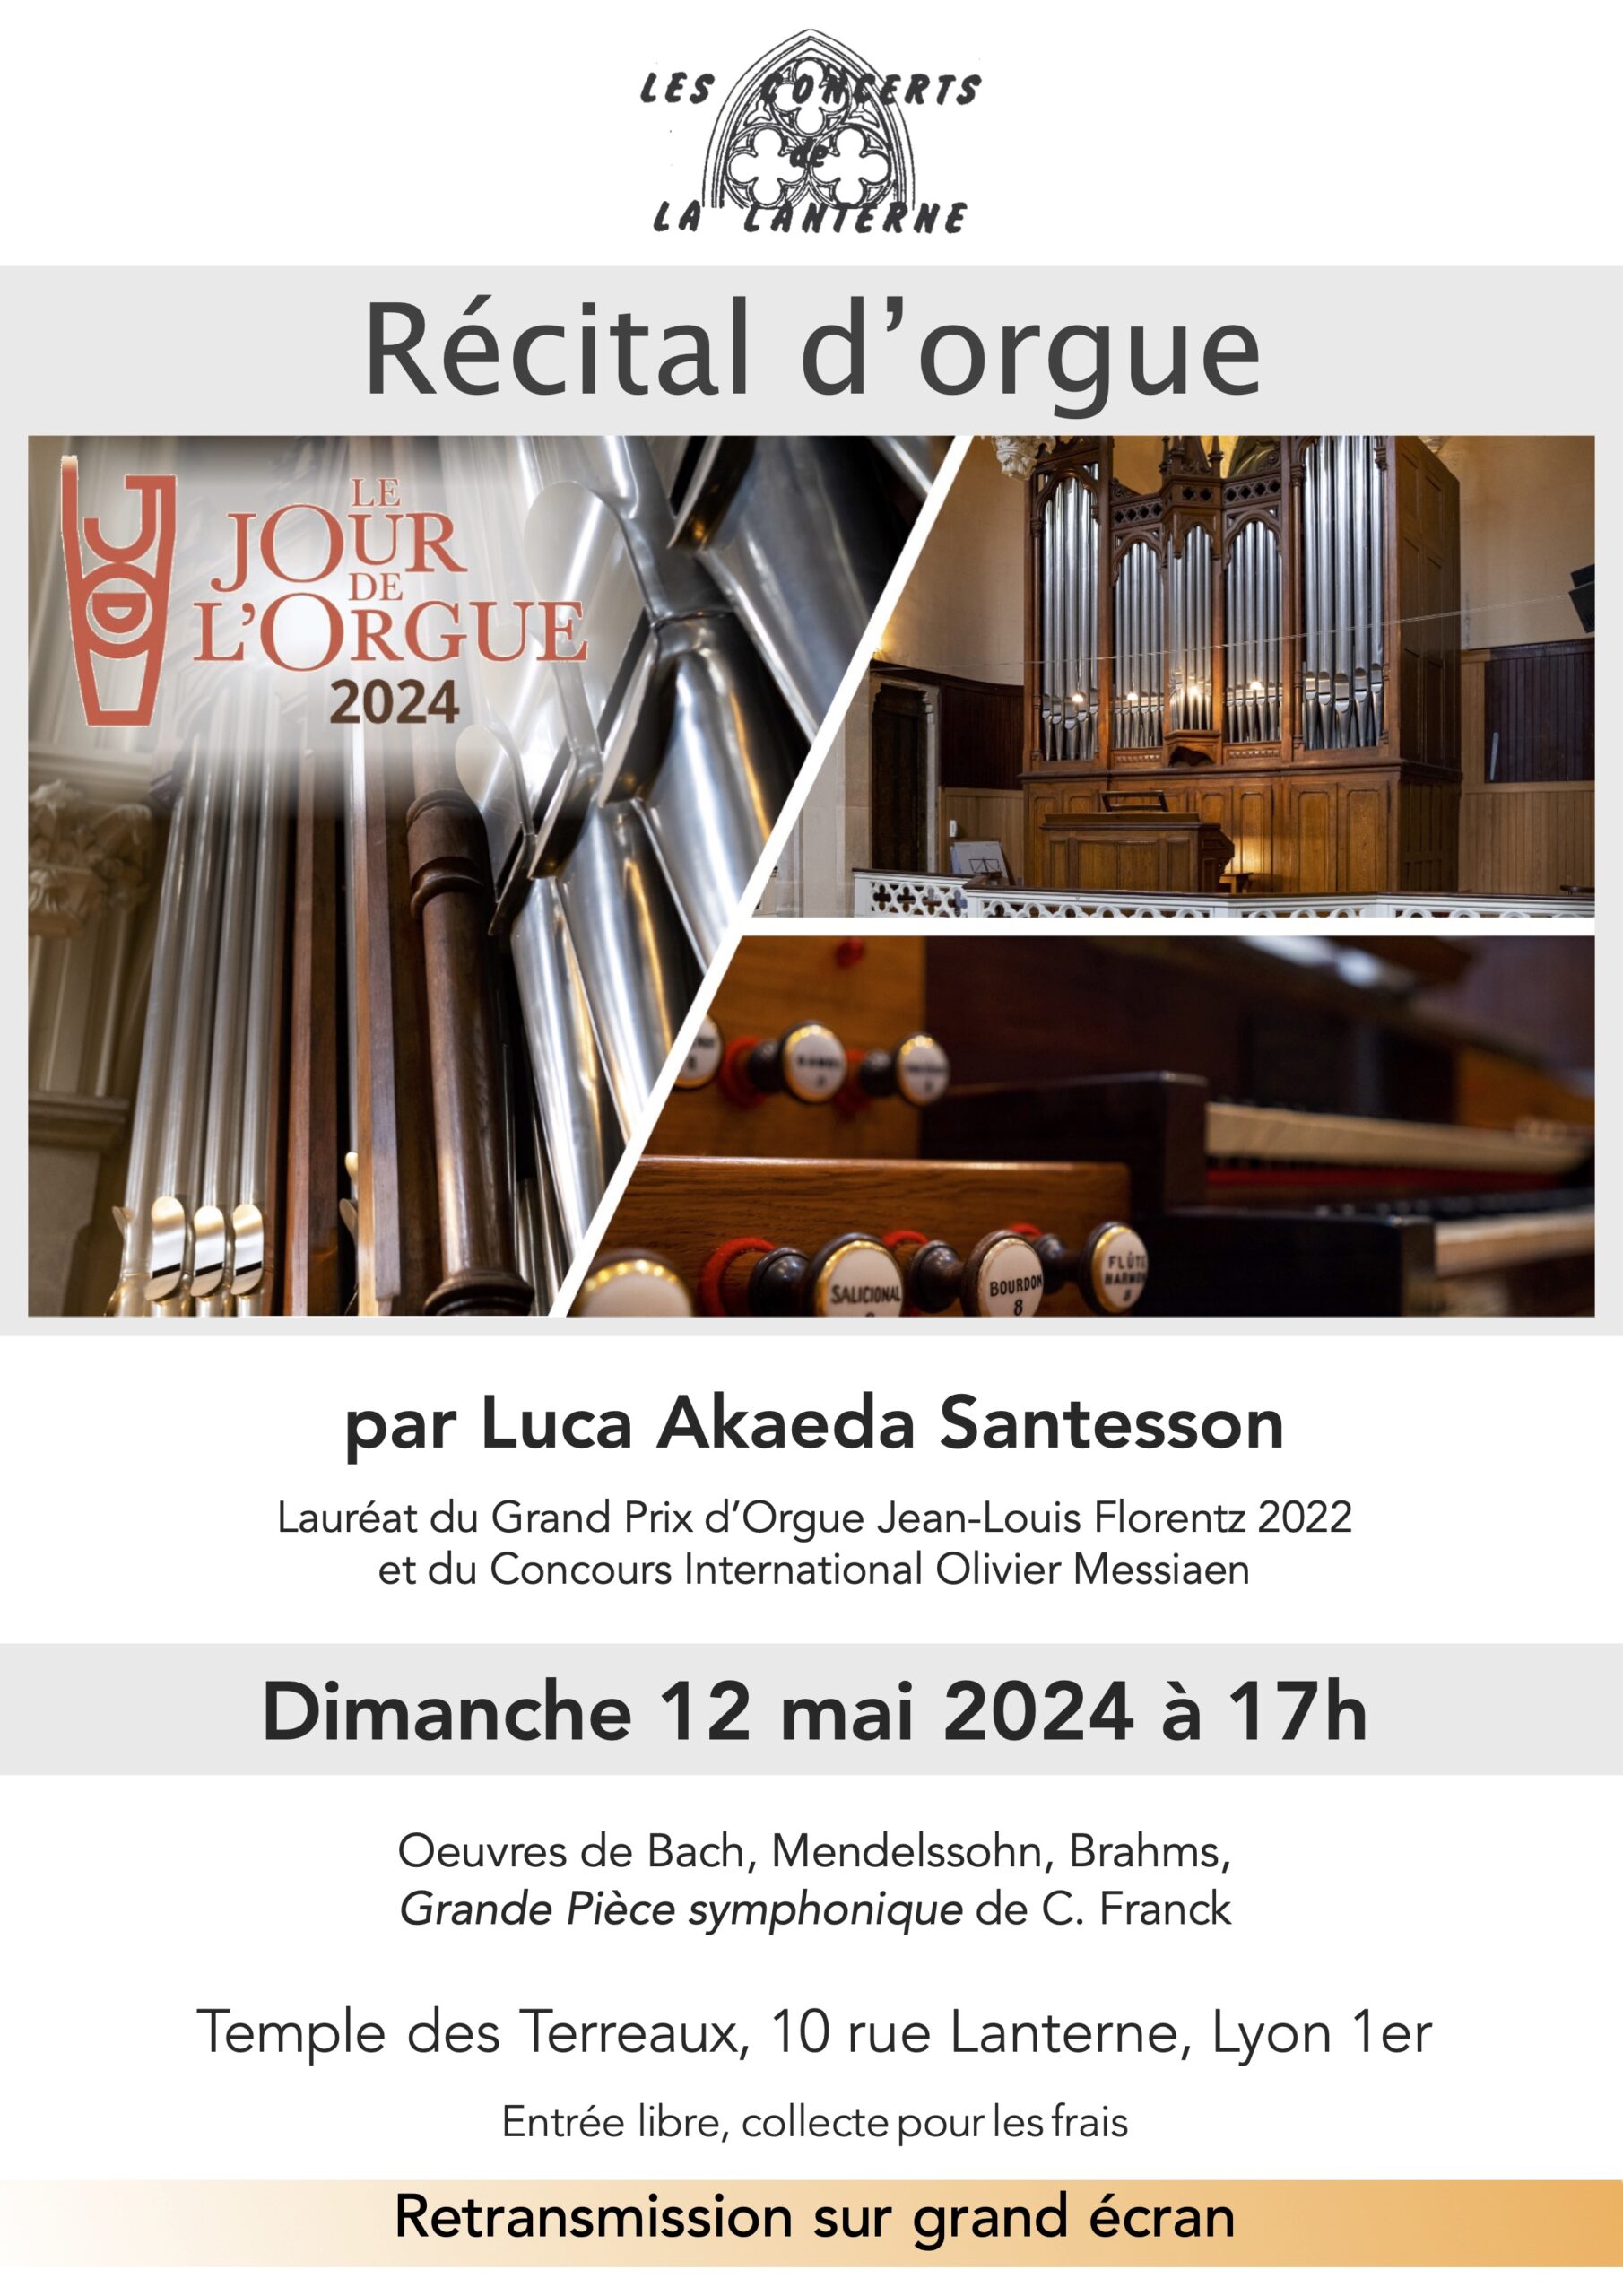 Affiche concert d'orgue, dimanche 12 mai 2024 à 17h, entrée libre.